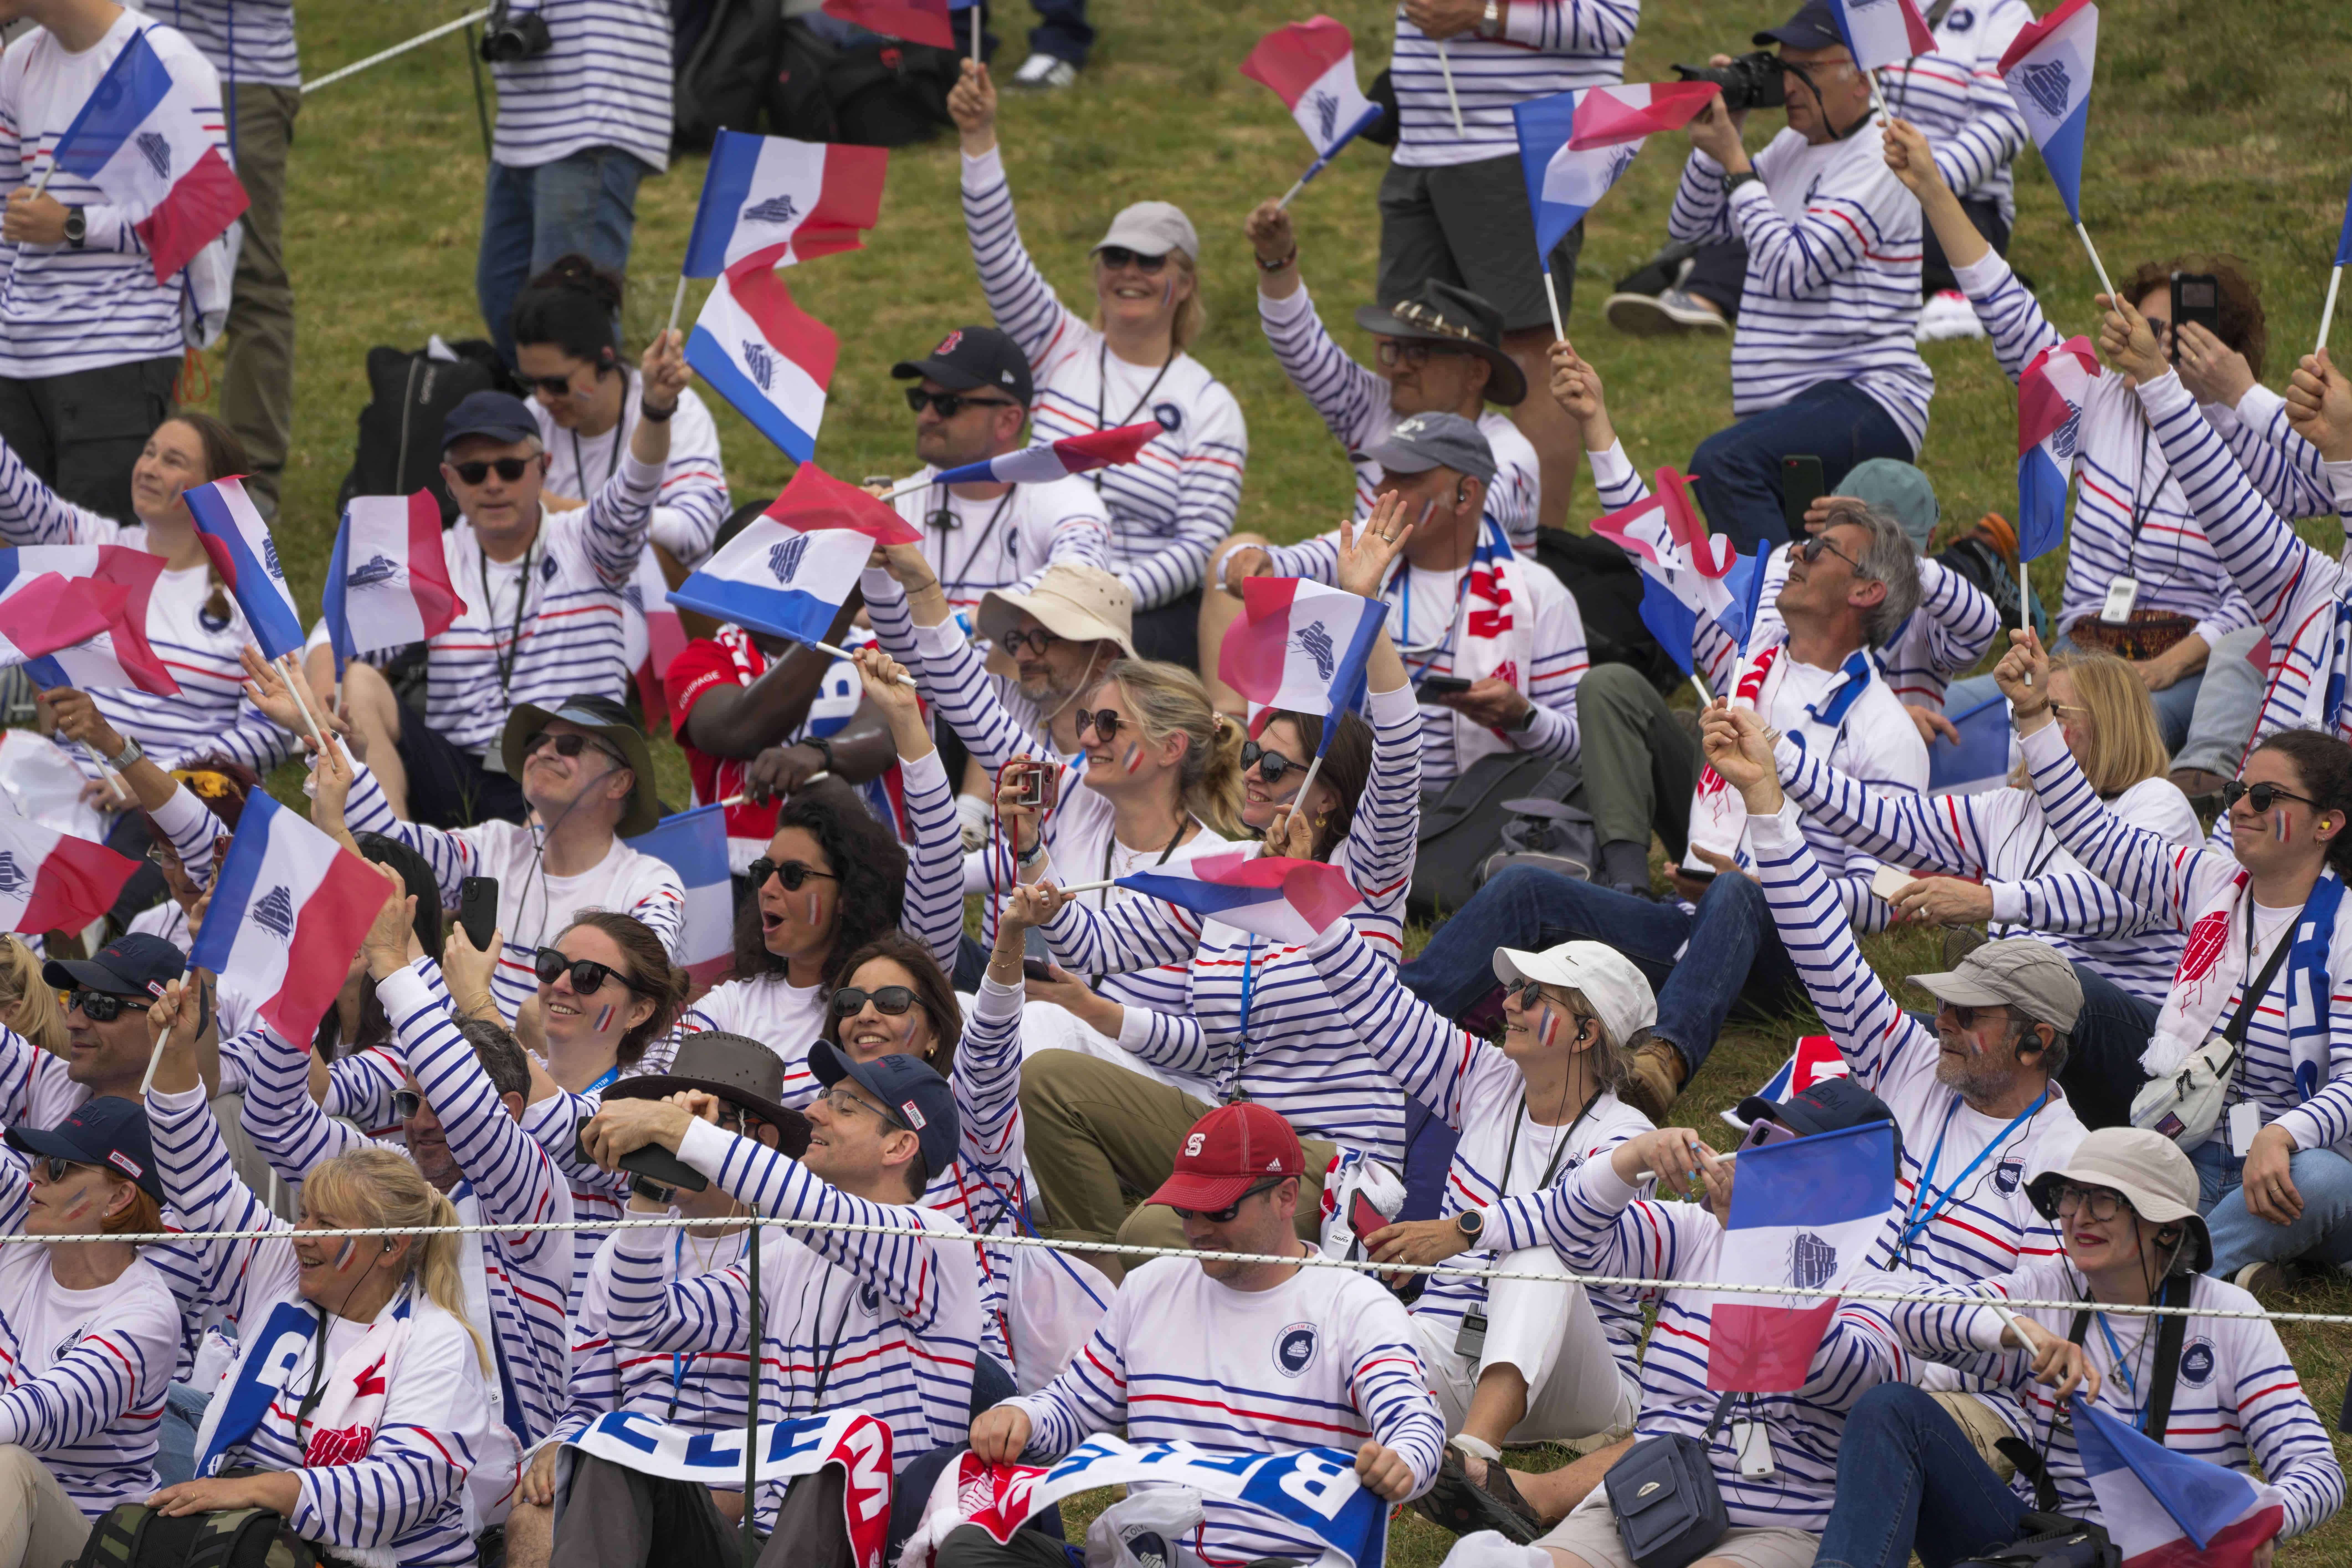 Los espectadores ondean banderas francesas con una imagen de la goleta francesa de tres mástiles Belem durante la ceremonia oficial de encendido de la llama de los Juegos Olímpicos de París, en el sitio de la Antigua Olimpia, Grecia, el martes 16 de abril de 2024.